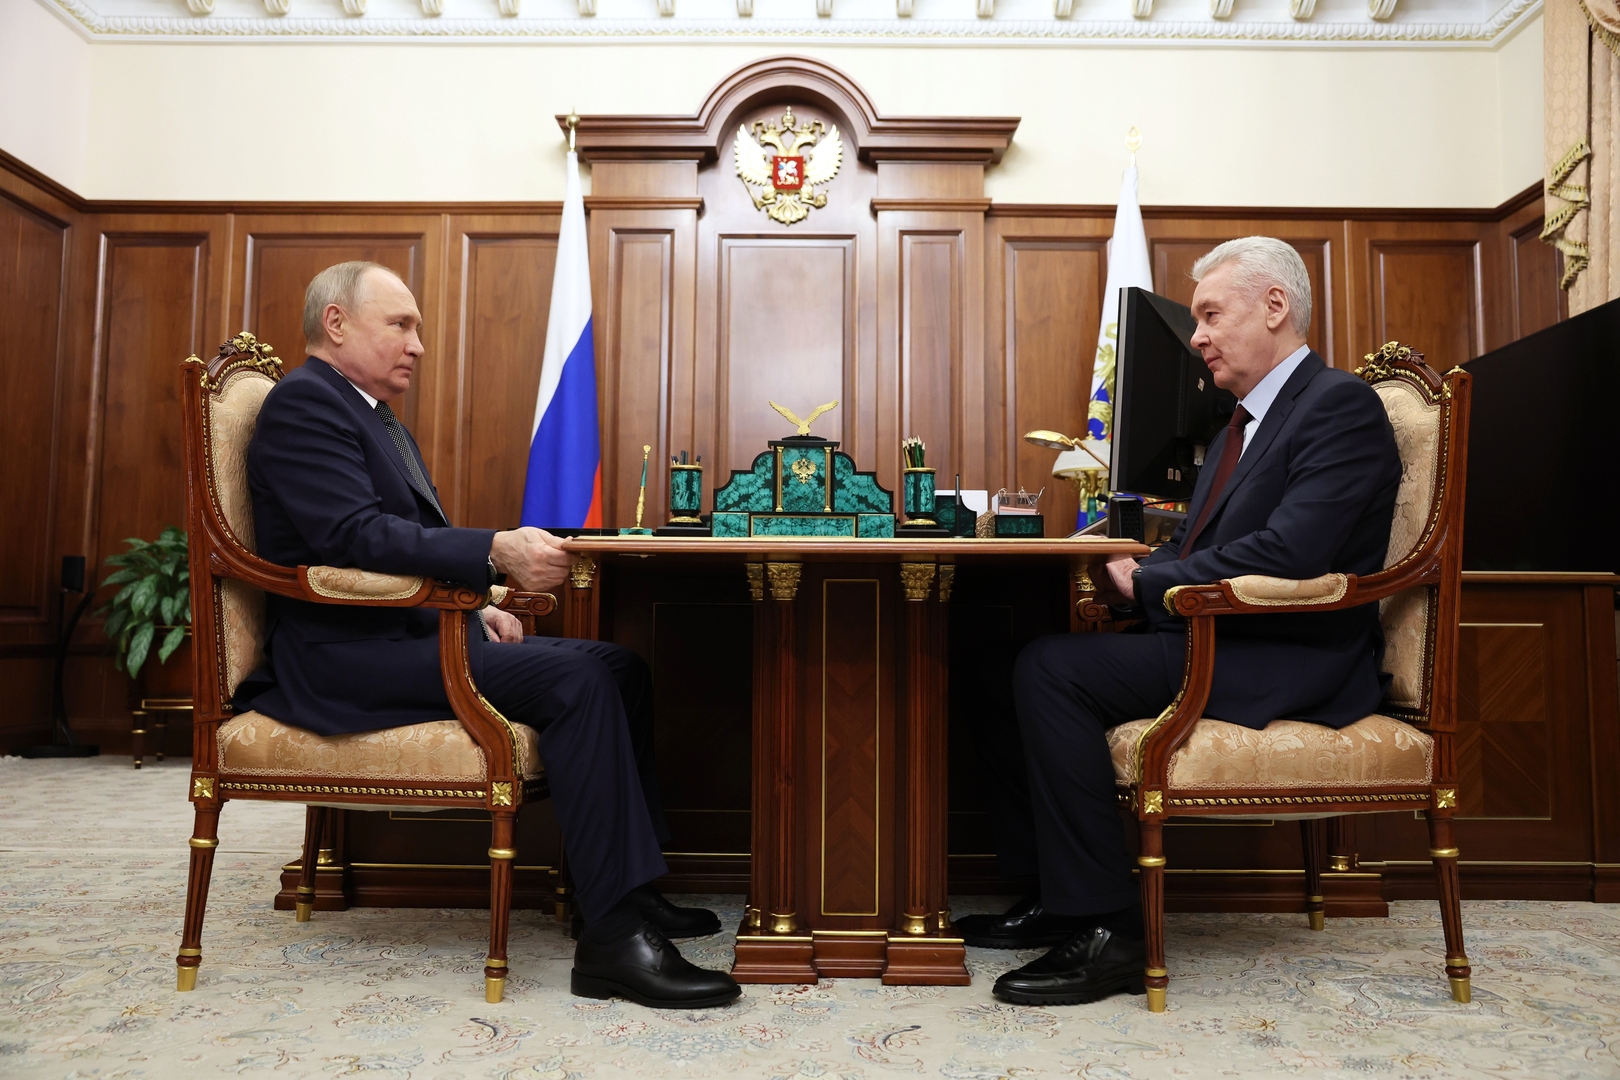 عمدة موسكو سيرغي سوبيانين يقدم تقريرا للرئيس الروسي فلاديمير بوتين